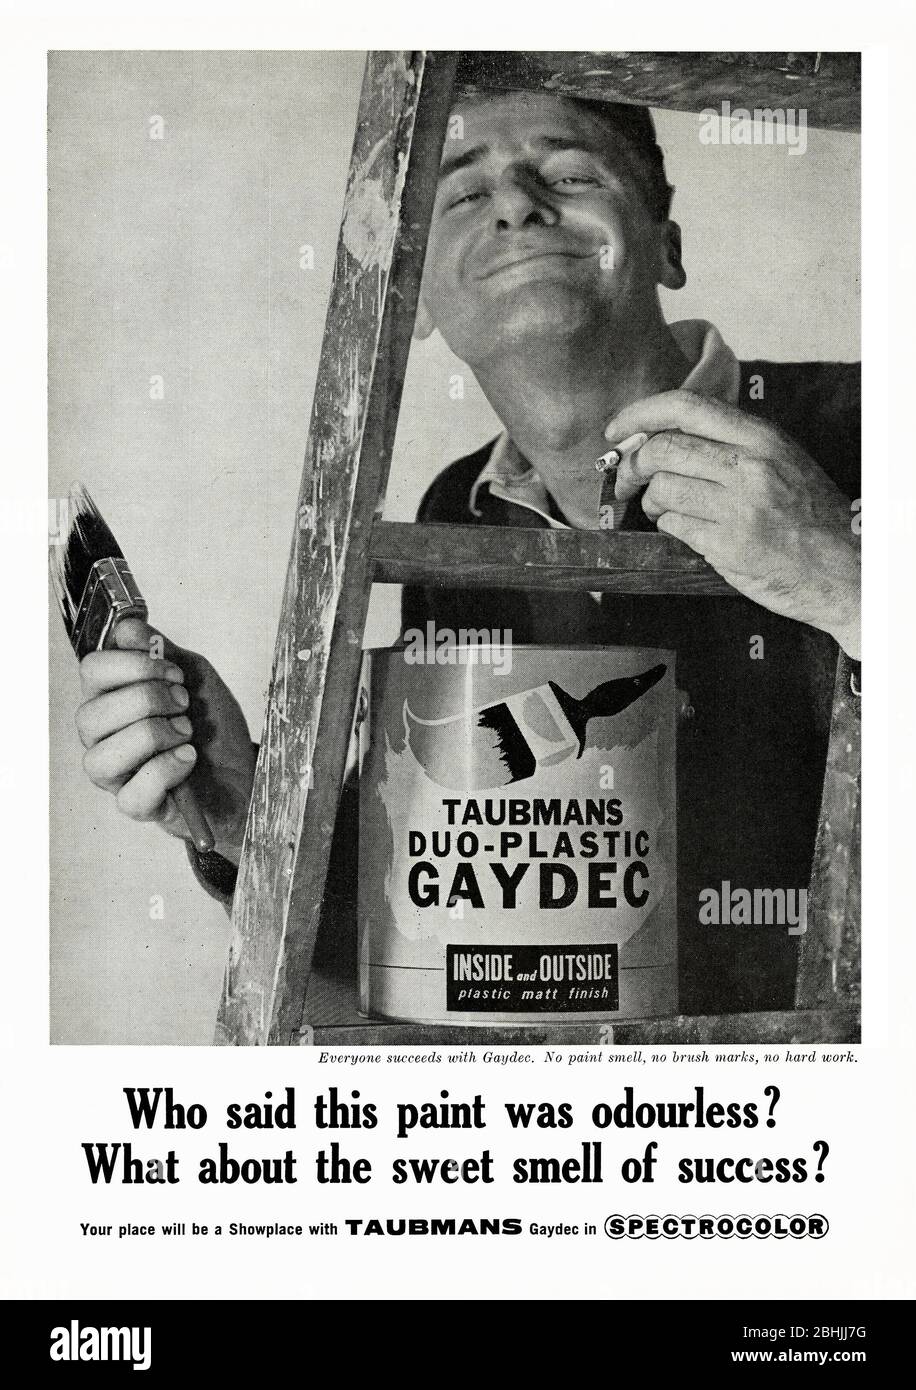 Une publicité des années 1960 pour la peinture intérieure et extérieure Taubmans 'Duo-plastic Gaydec', publiée dans un magazine australien en 1962. Il favorise la qualité inodore de la peinture « plastique » mate de la société. Le choix de la marque-name est un qui est très de son temps dans l'utilisation du mot «gay» dans le produit. Notez que l'homme sur l'échelle a une cigarette allumée dans sa main gauche. La société fabrique toujours de la peinture dans le cadre du groupe PPG (Pittsburgh plate Glass), mais la peinture Gaydec ne fait plus partie de sa gamme. Banque D'Images